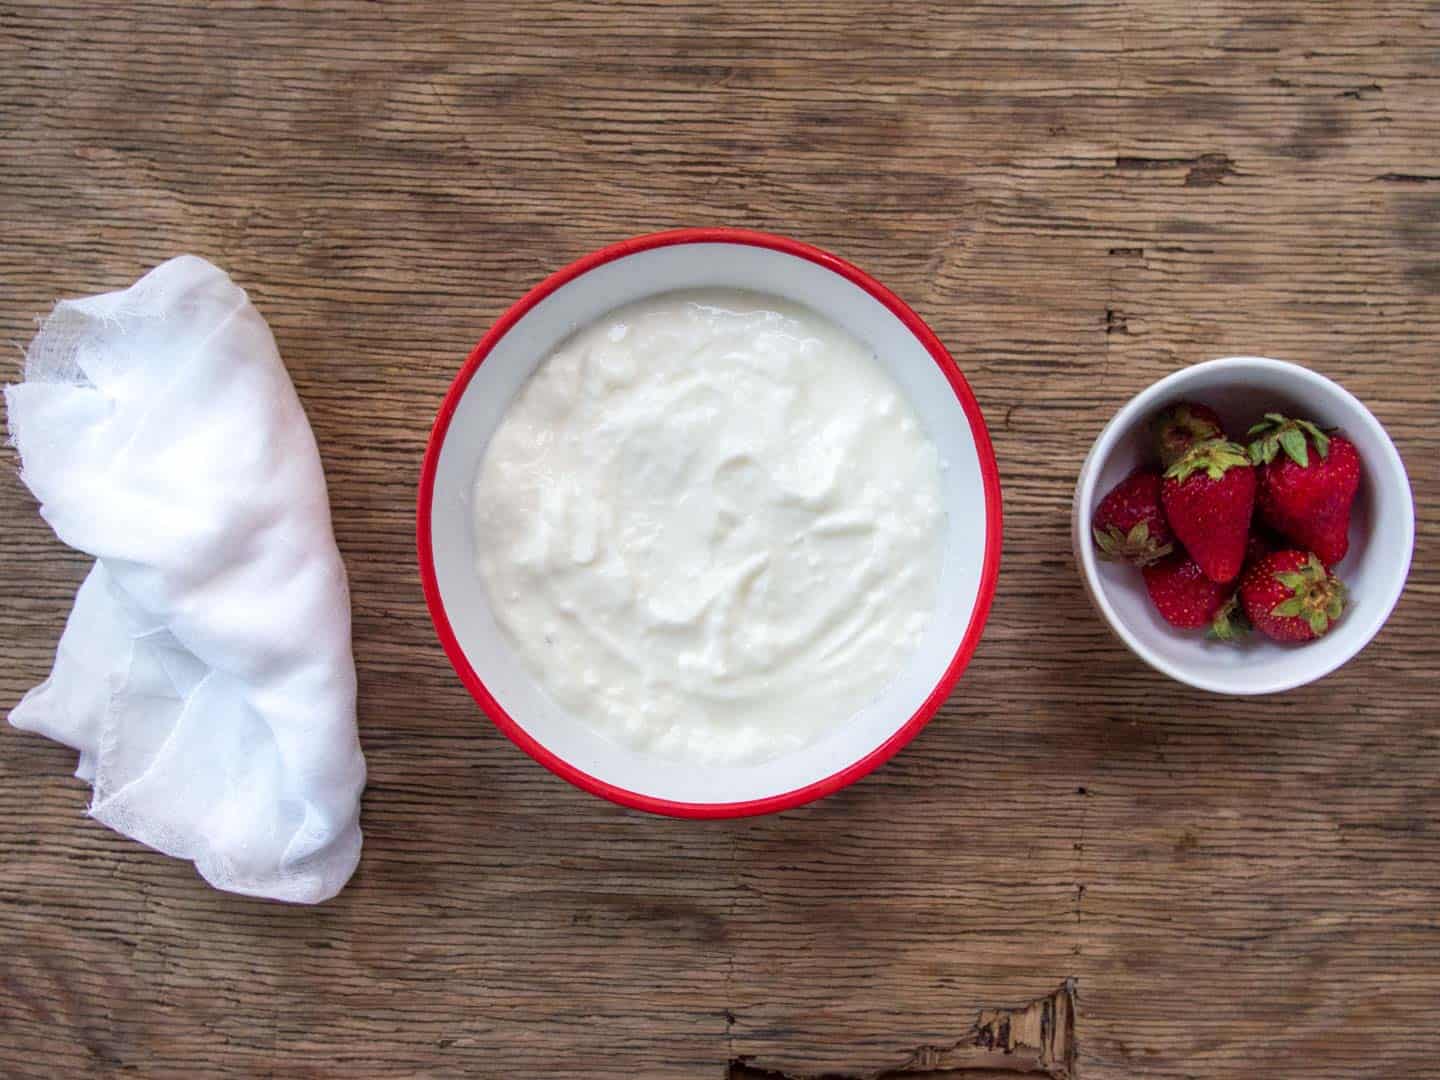 Ingredients for Labneh Cheesecake - yogurt and berries